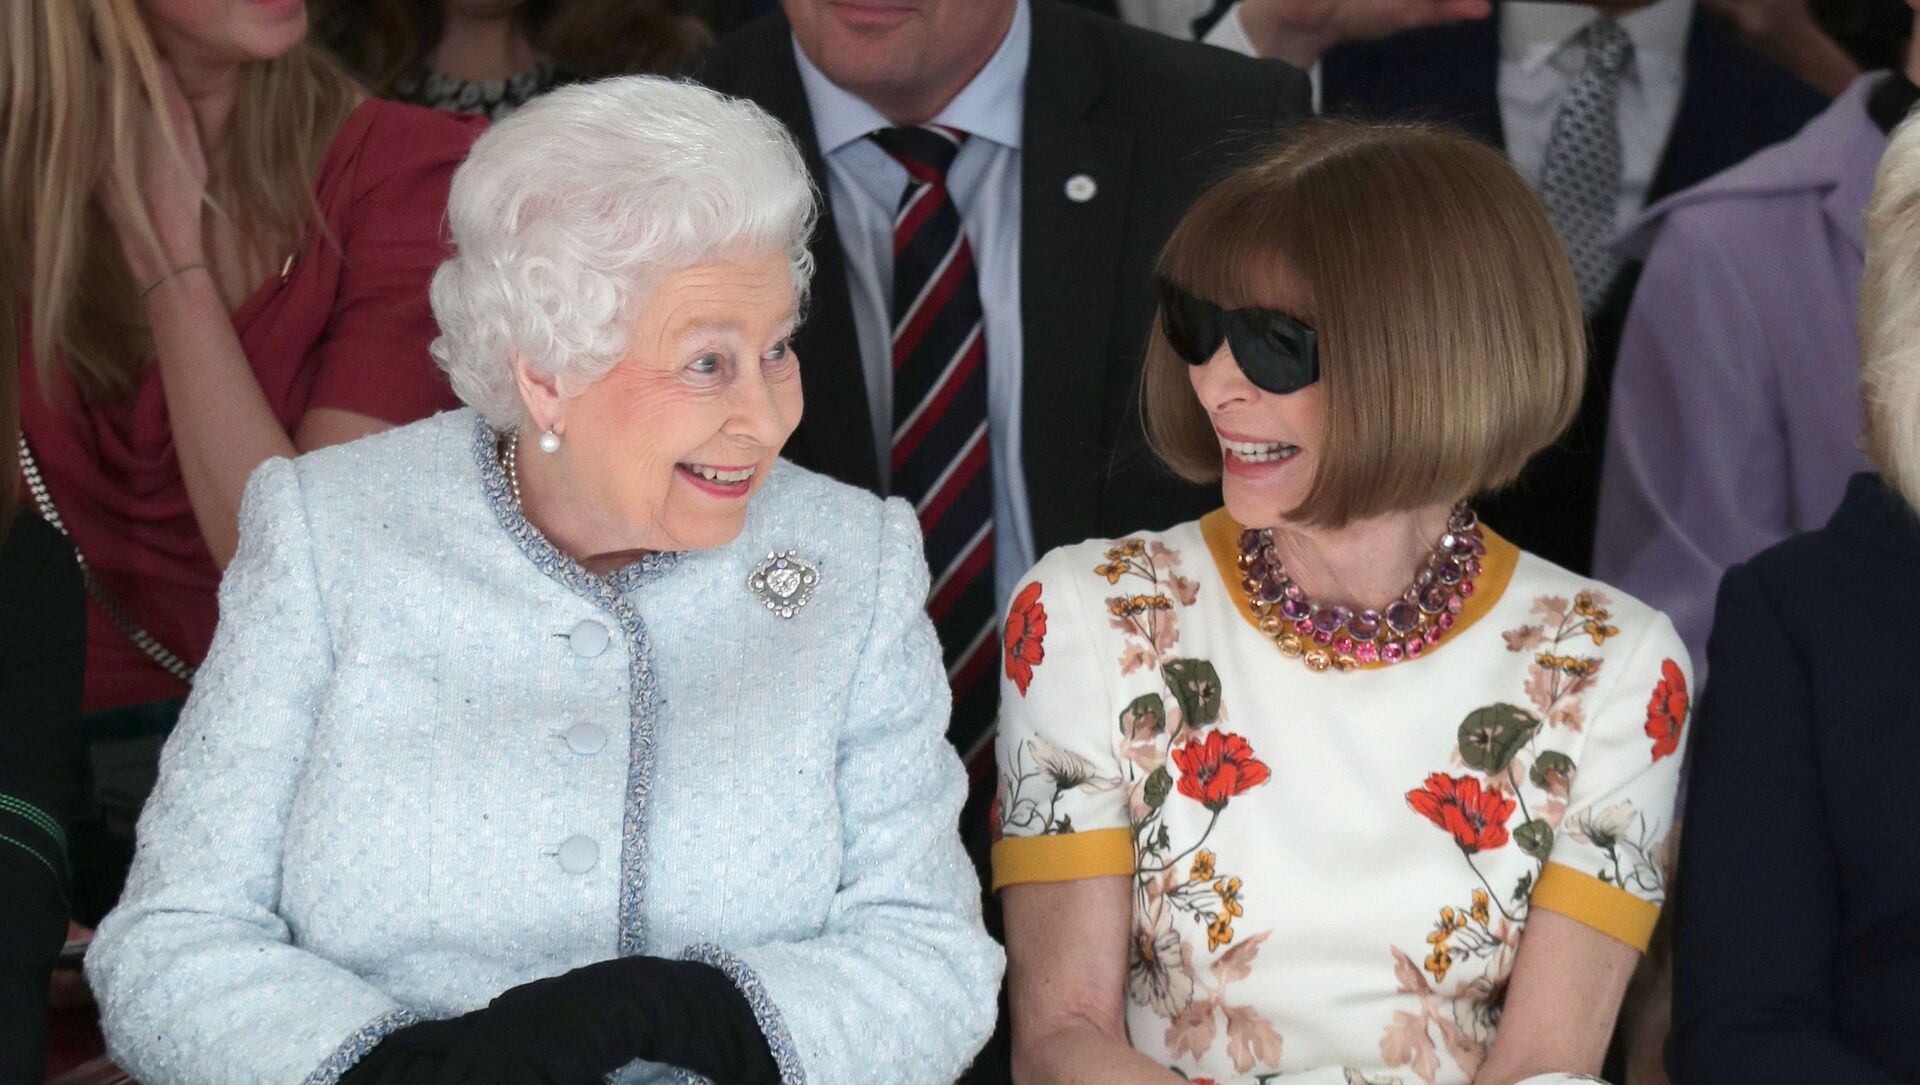 ملكة بريطانيا إليزابيث الثانية تجلس مع رئيس تحرير مجلة فوغ في عرض أزياء أقيم في العاصمة البريطانية لندن في 20 فبراير/شباط 2018 - سبوتنيك عربي, 1920, 19.10.2021